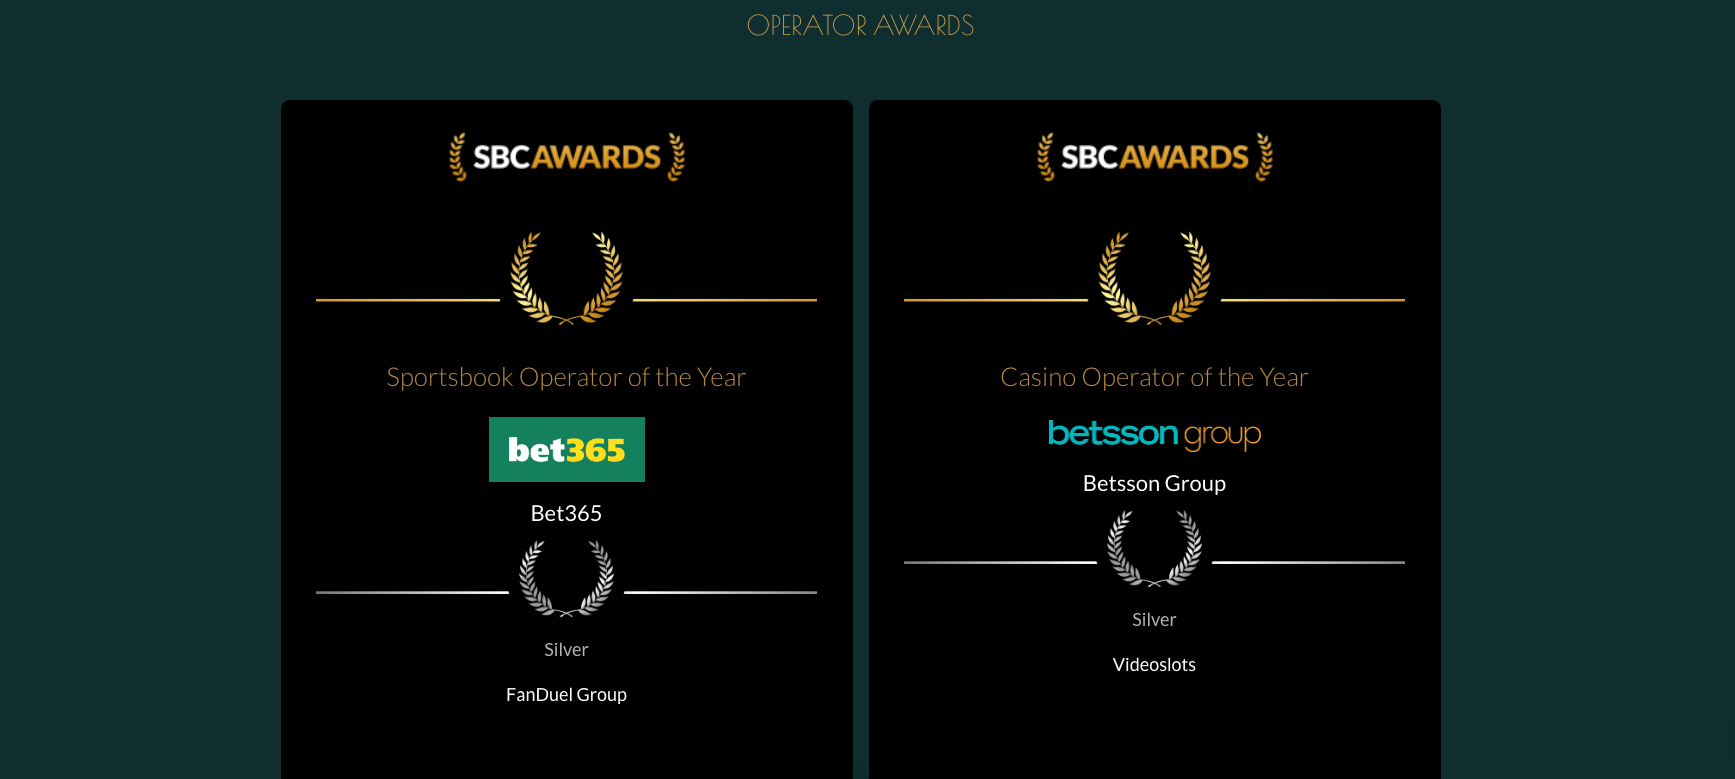 Trionfo Betsson agli SBC Awards, Videoslots conquista l’argento. Gli operatori e i provider premiati a Barcellona